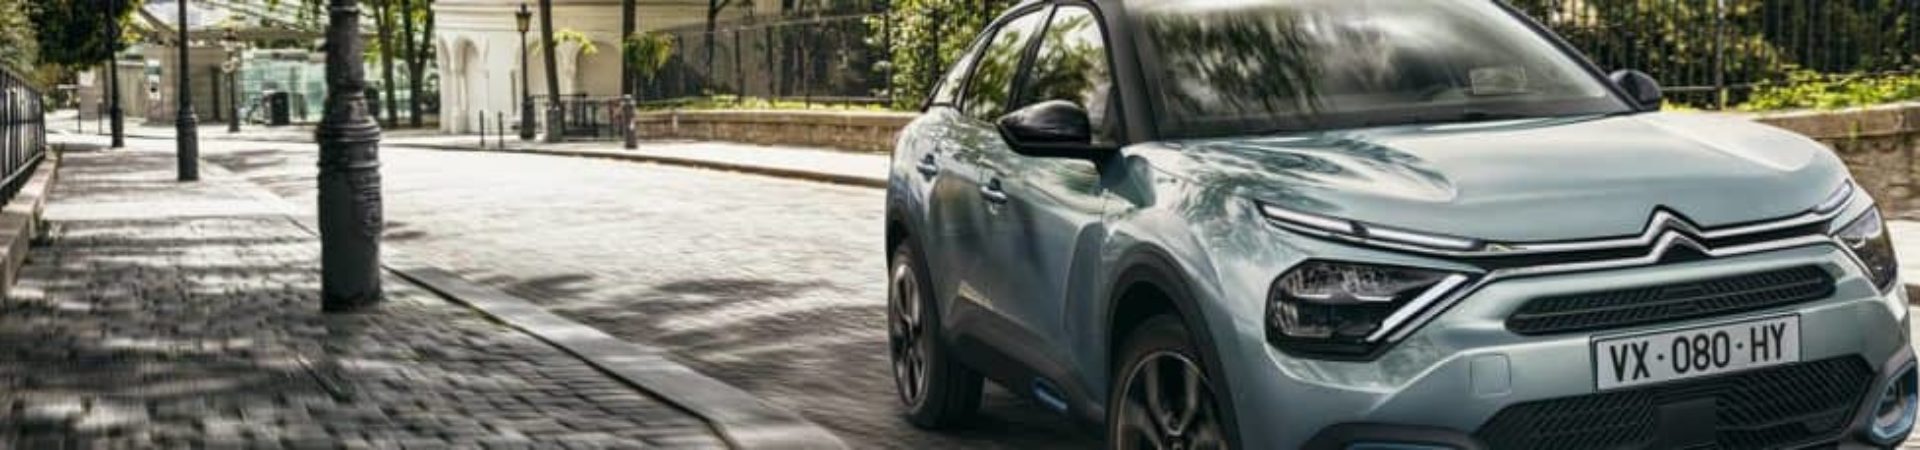 Recharge Citroën ë-Berlingo : quelle borne installer ? Quel coût ?